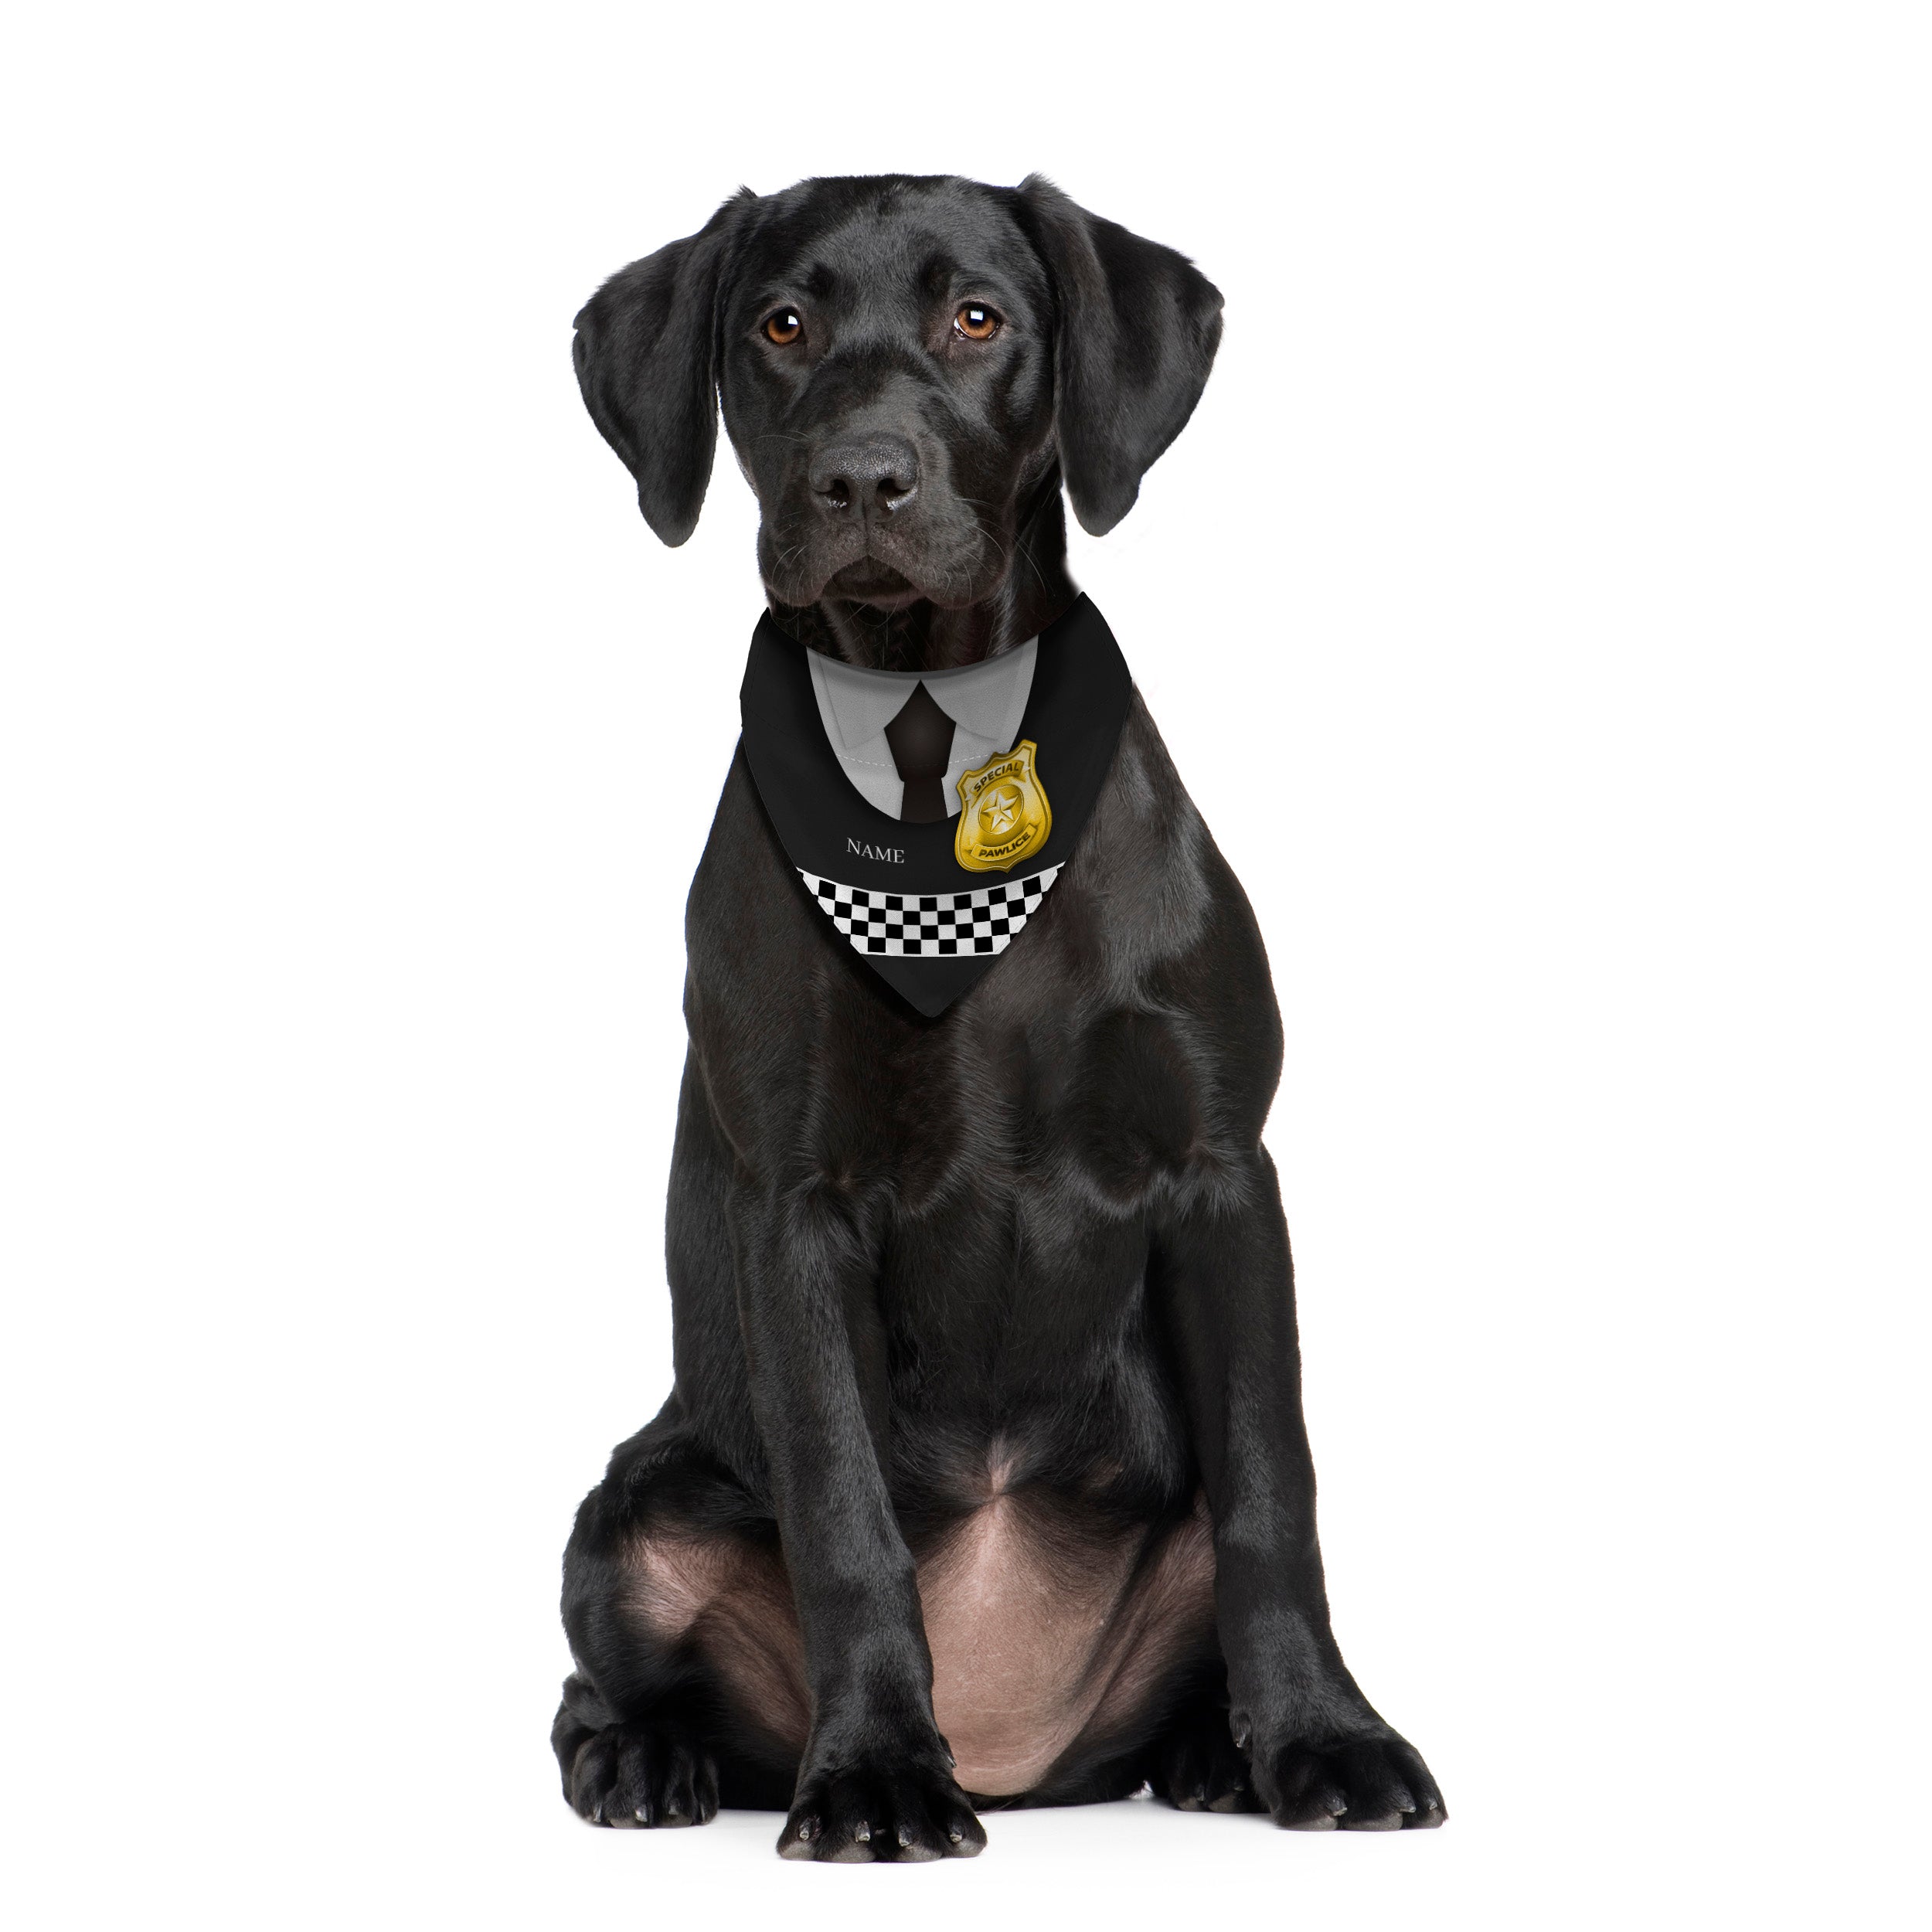 Special Pawlice Uniform - Custom Personalised Dog Bandana - 4 Sizes